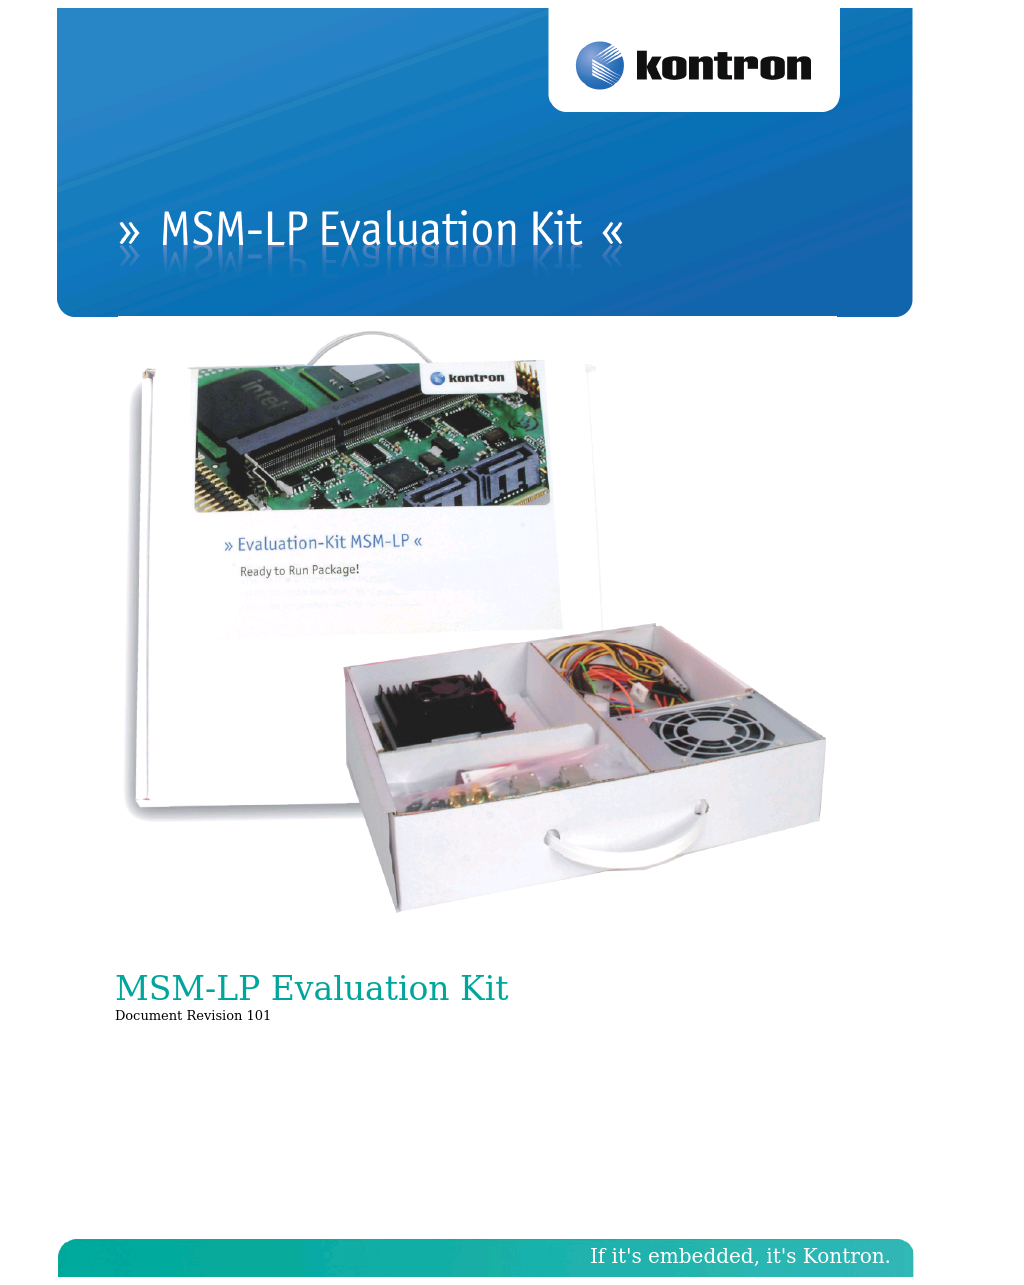 MSM-LP Manual Start-up Guide V101